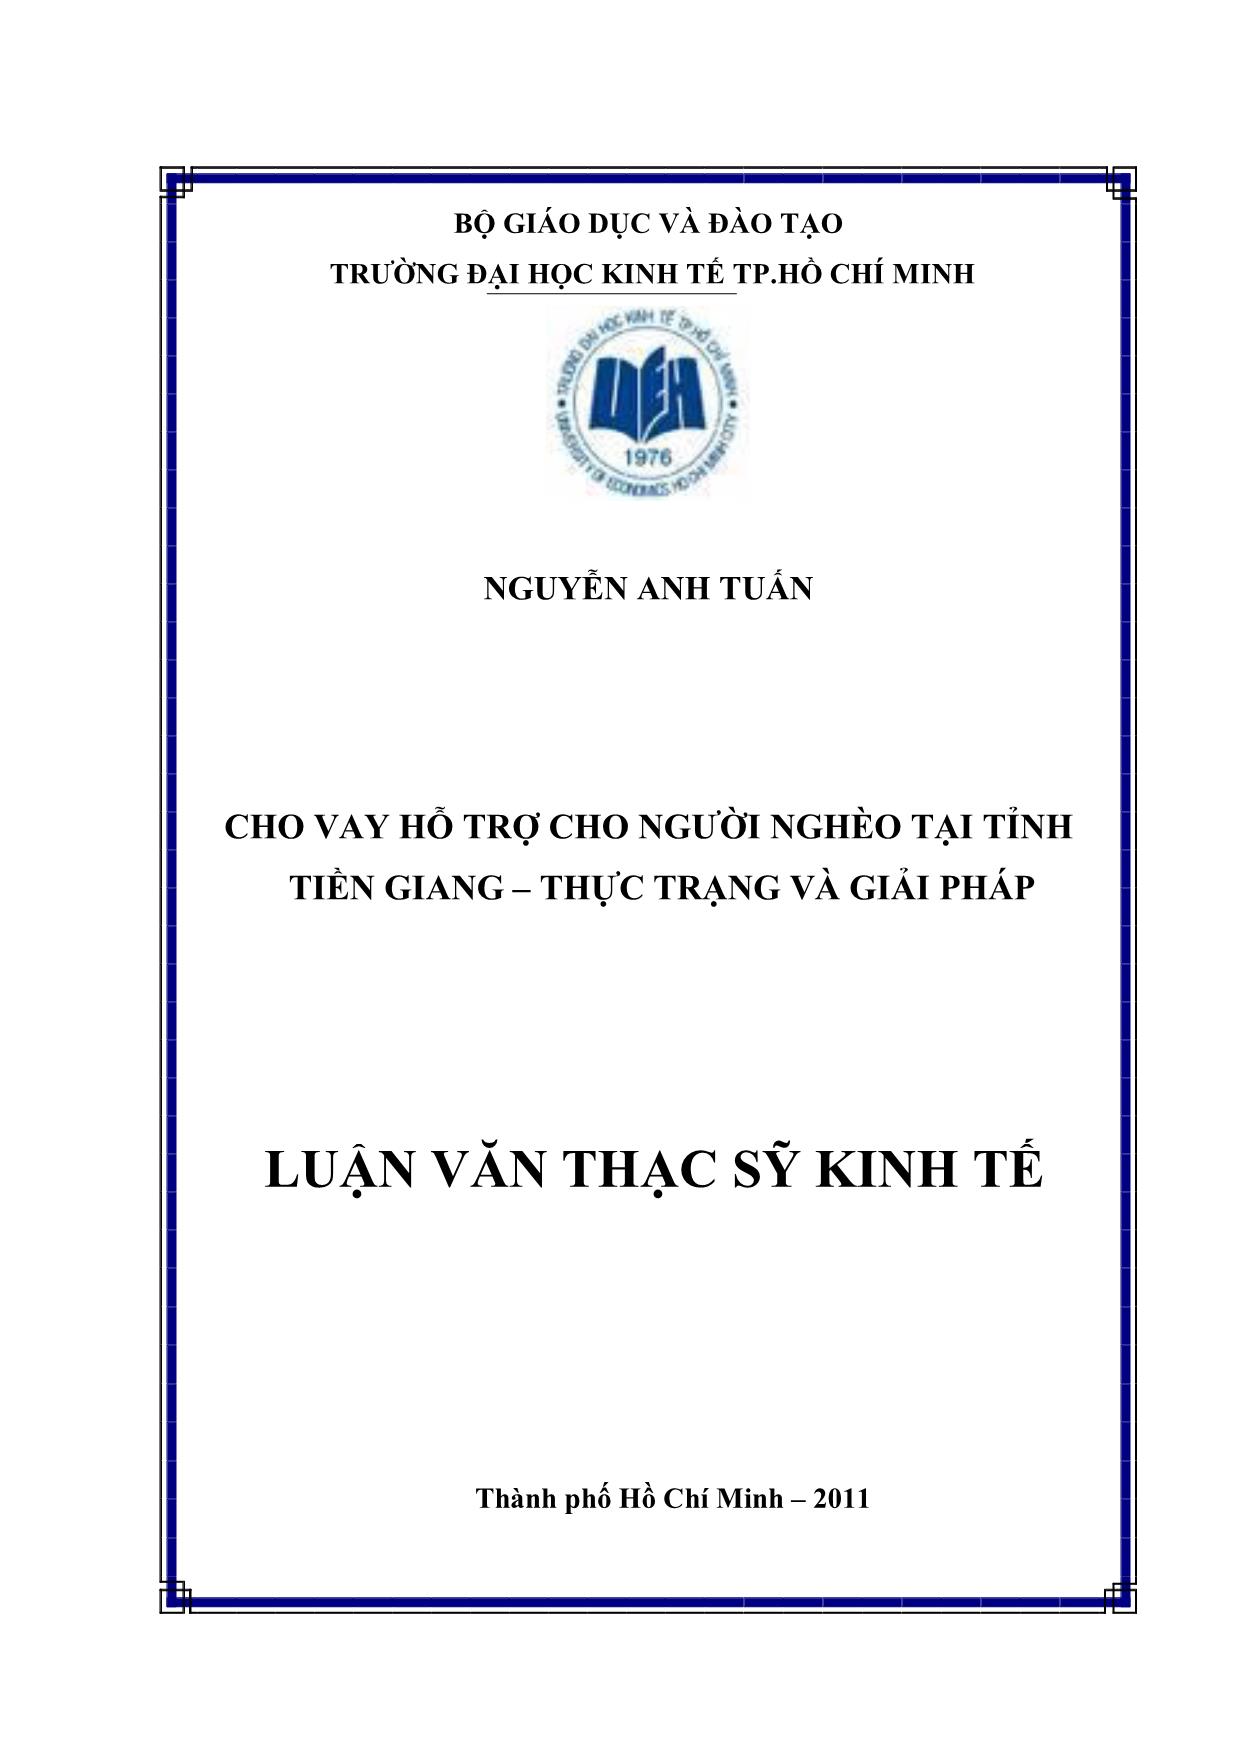 Luận văn Cho vay hỗ trợ cho người nghèo tại tỉnh Tiền Giang - Thực trạng và giải pháp trang 1